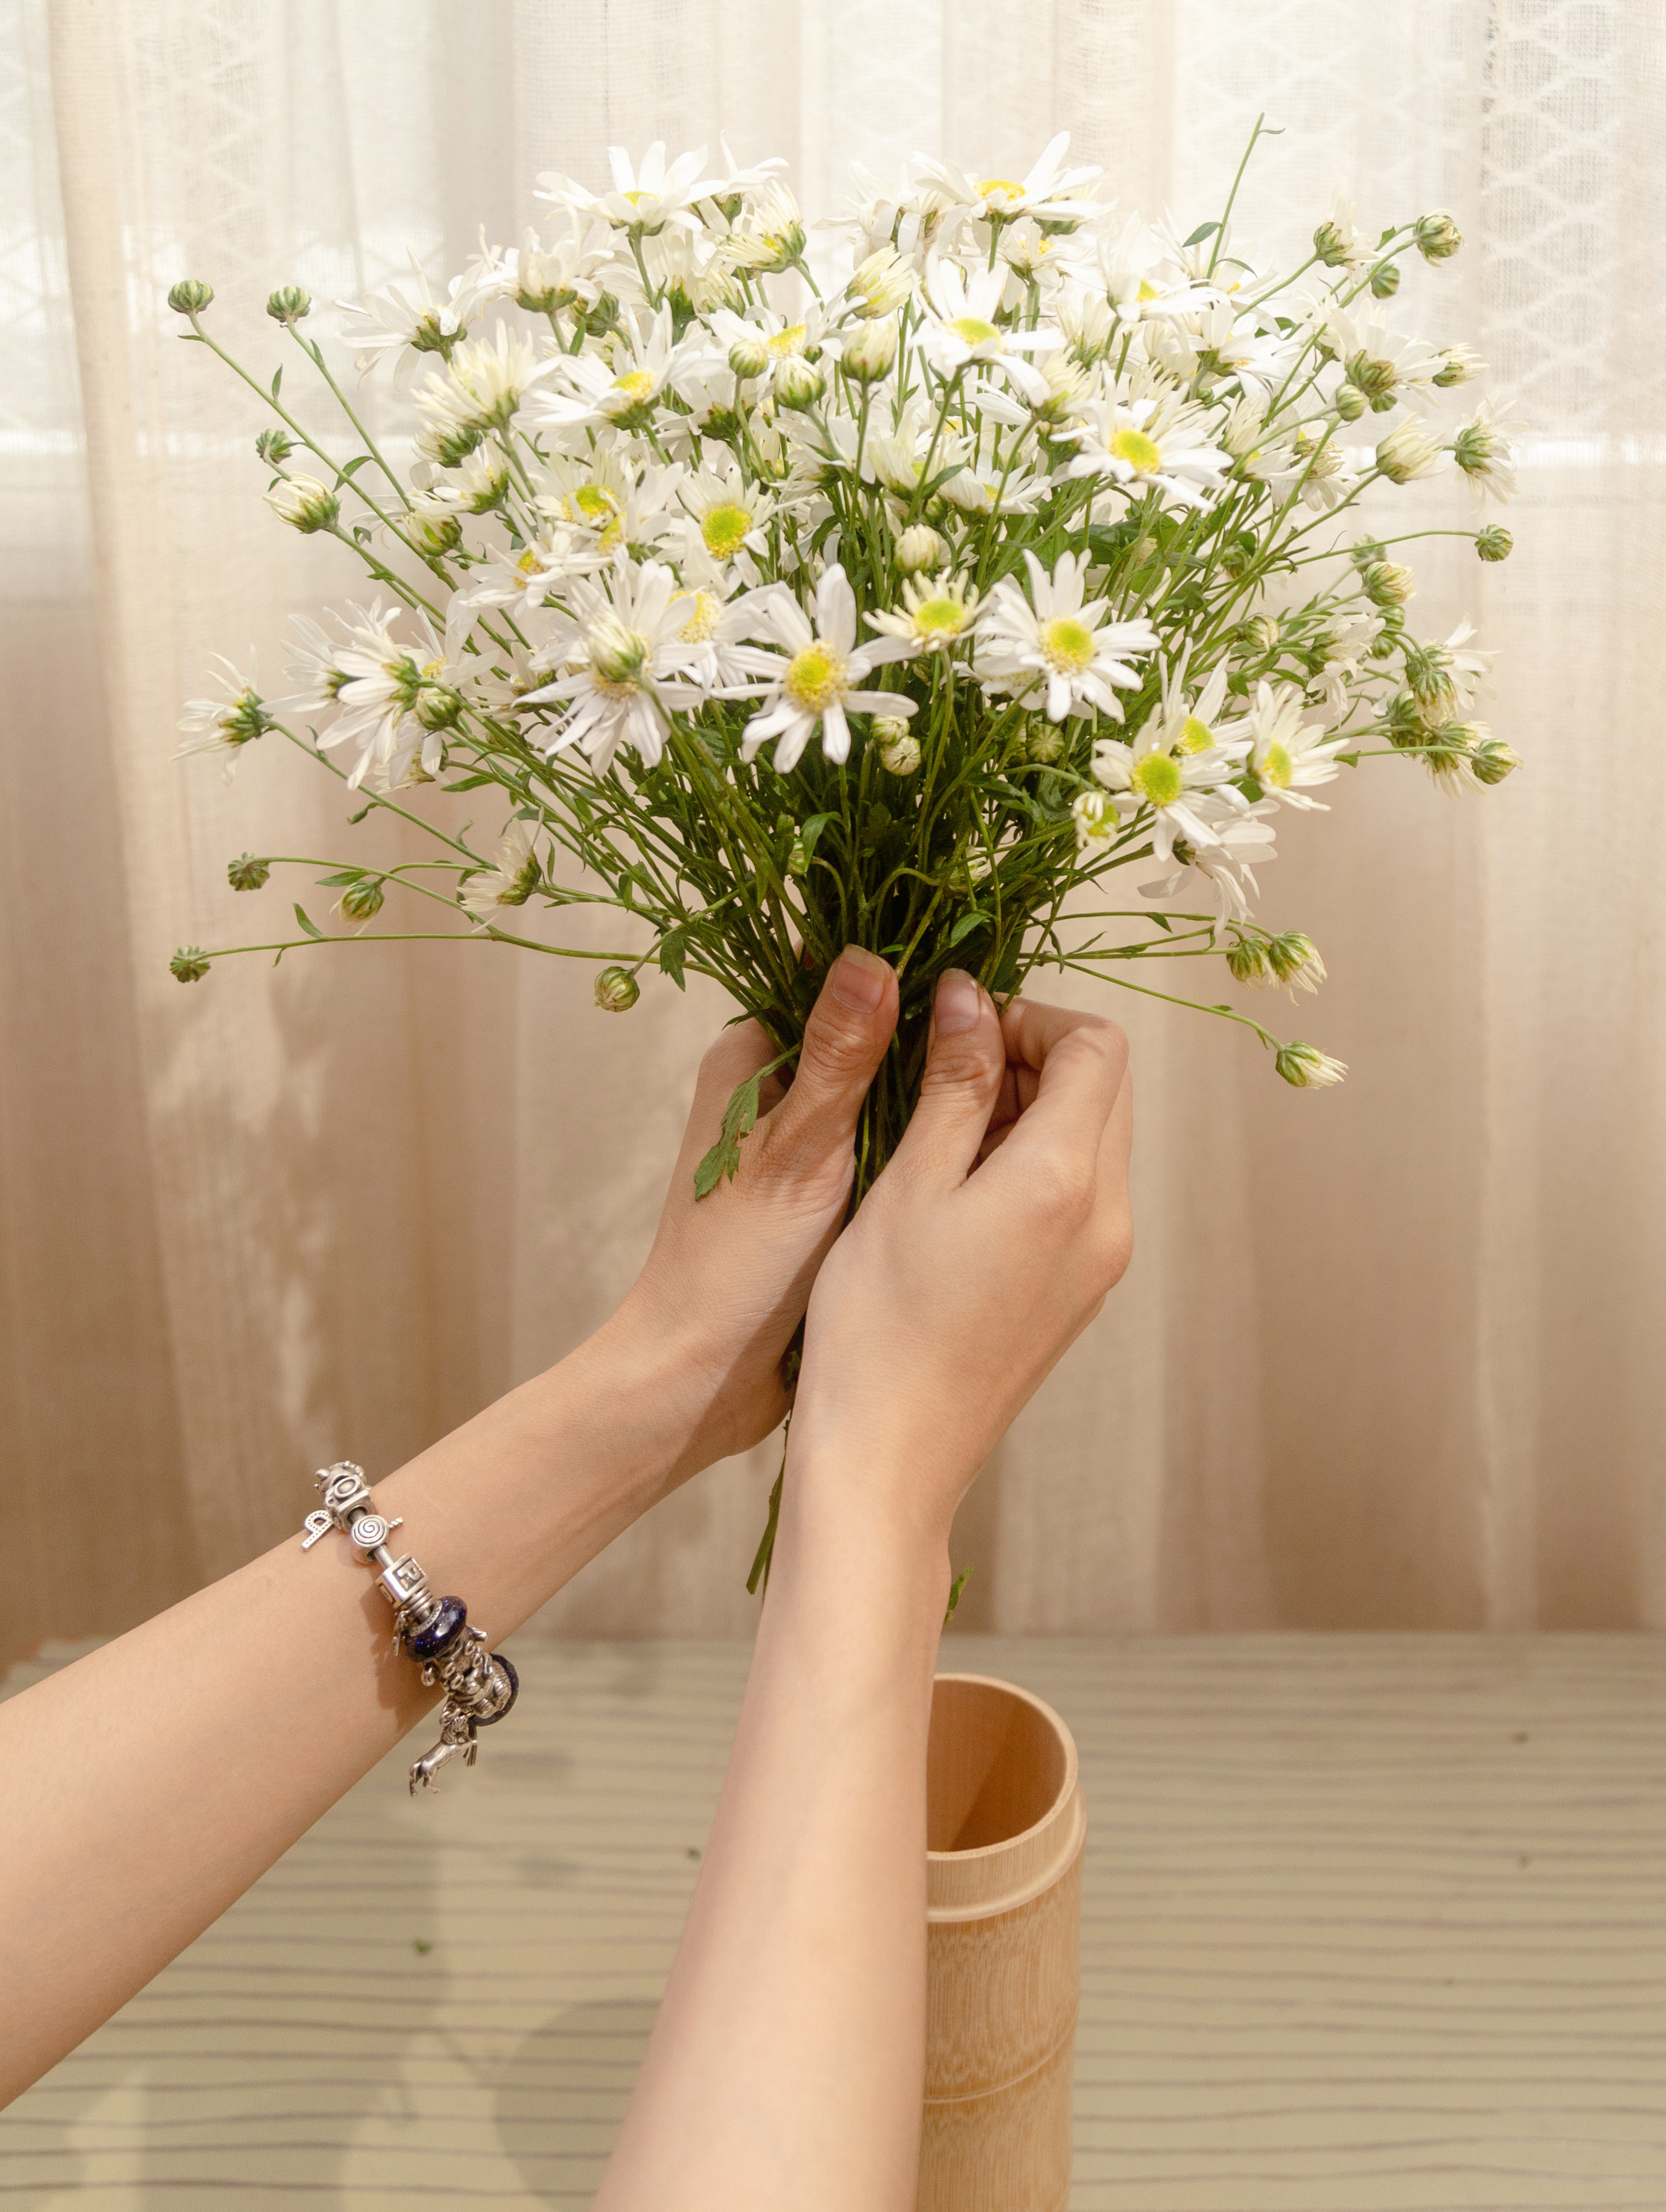 Chào mừng bạn đến với hình ảnh cắm hoa cúc họa mi đầy màu sắc sống động. Những đóa hoa cúc được sắp xếp đẹp mắt và tinh tế sẽ mang lại cho bạn cảm giác thư thái và hạnh phúc. Hãy cùng thưởng thức hình ảnh này để tận hưởng những giây phút thư giãn và đẹp nhất trong ngày.